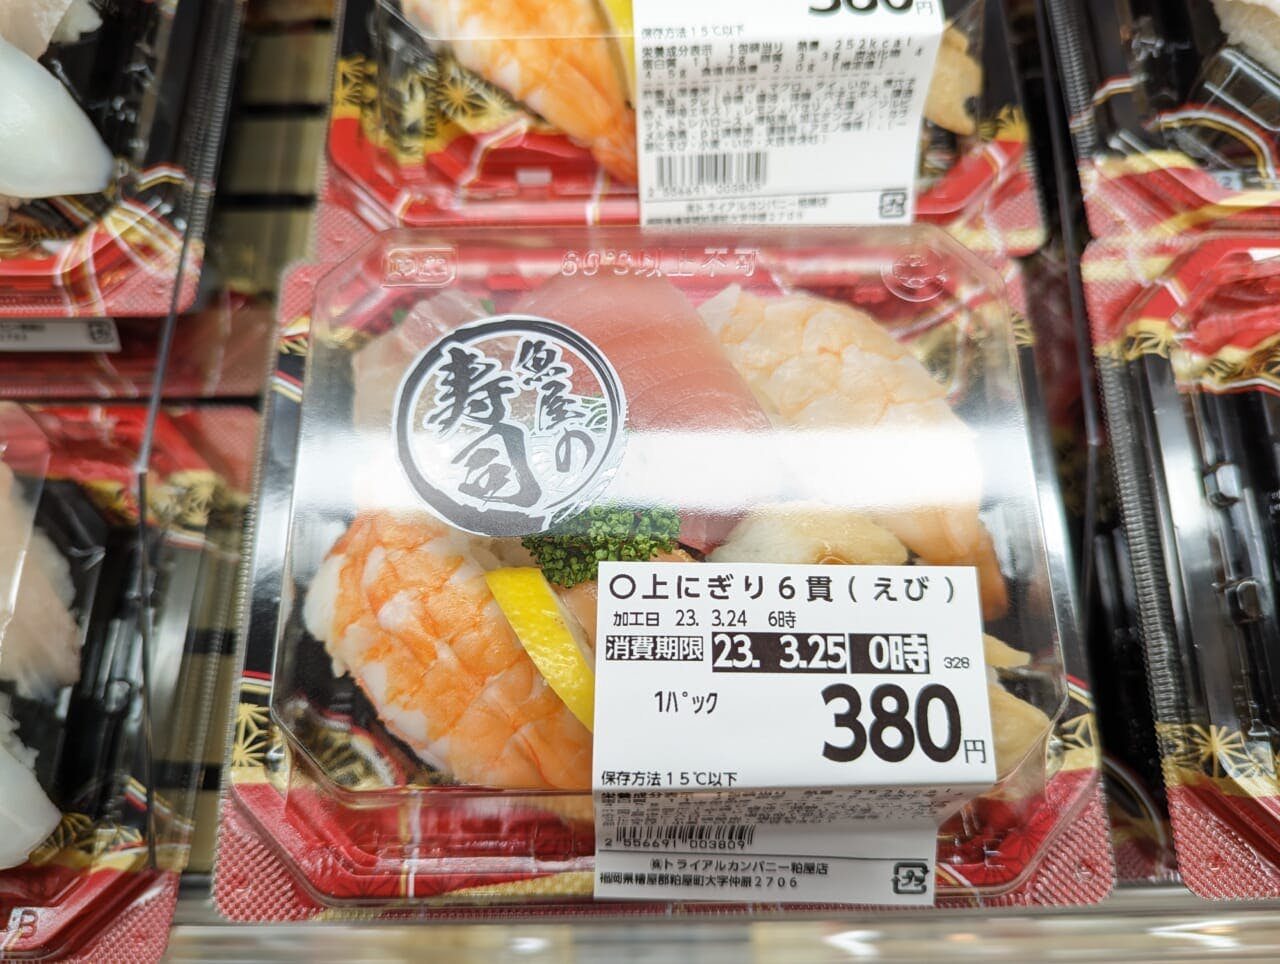 近隣店舗から供給を受ける鮮魚寿司はとくに強力な差別化商品